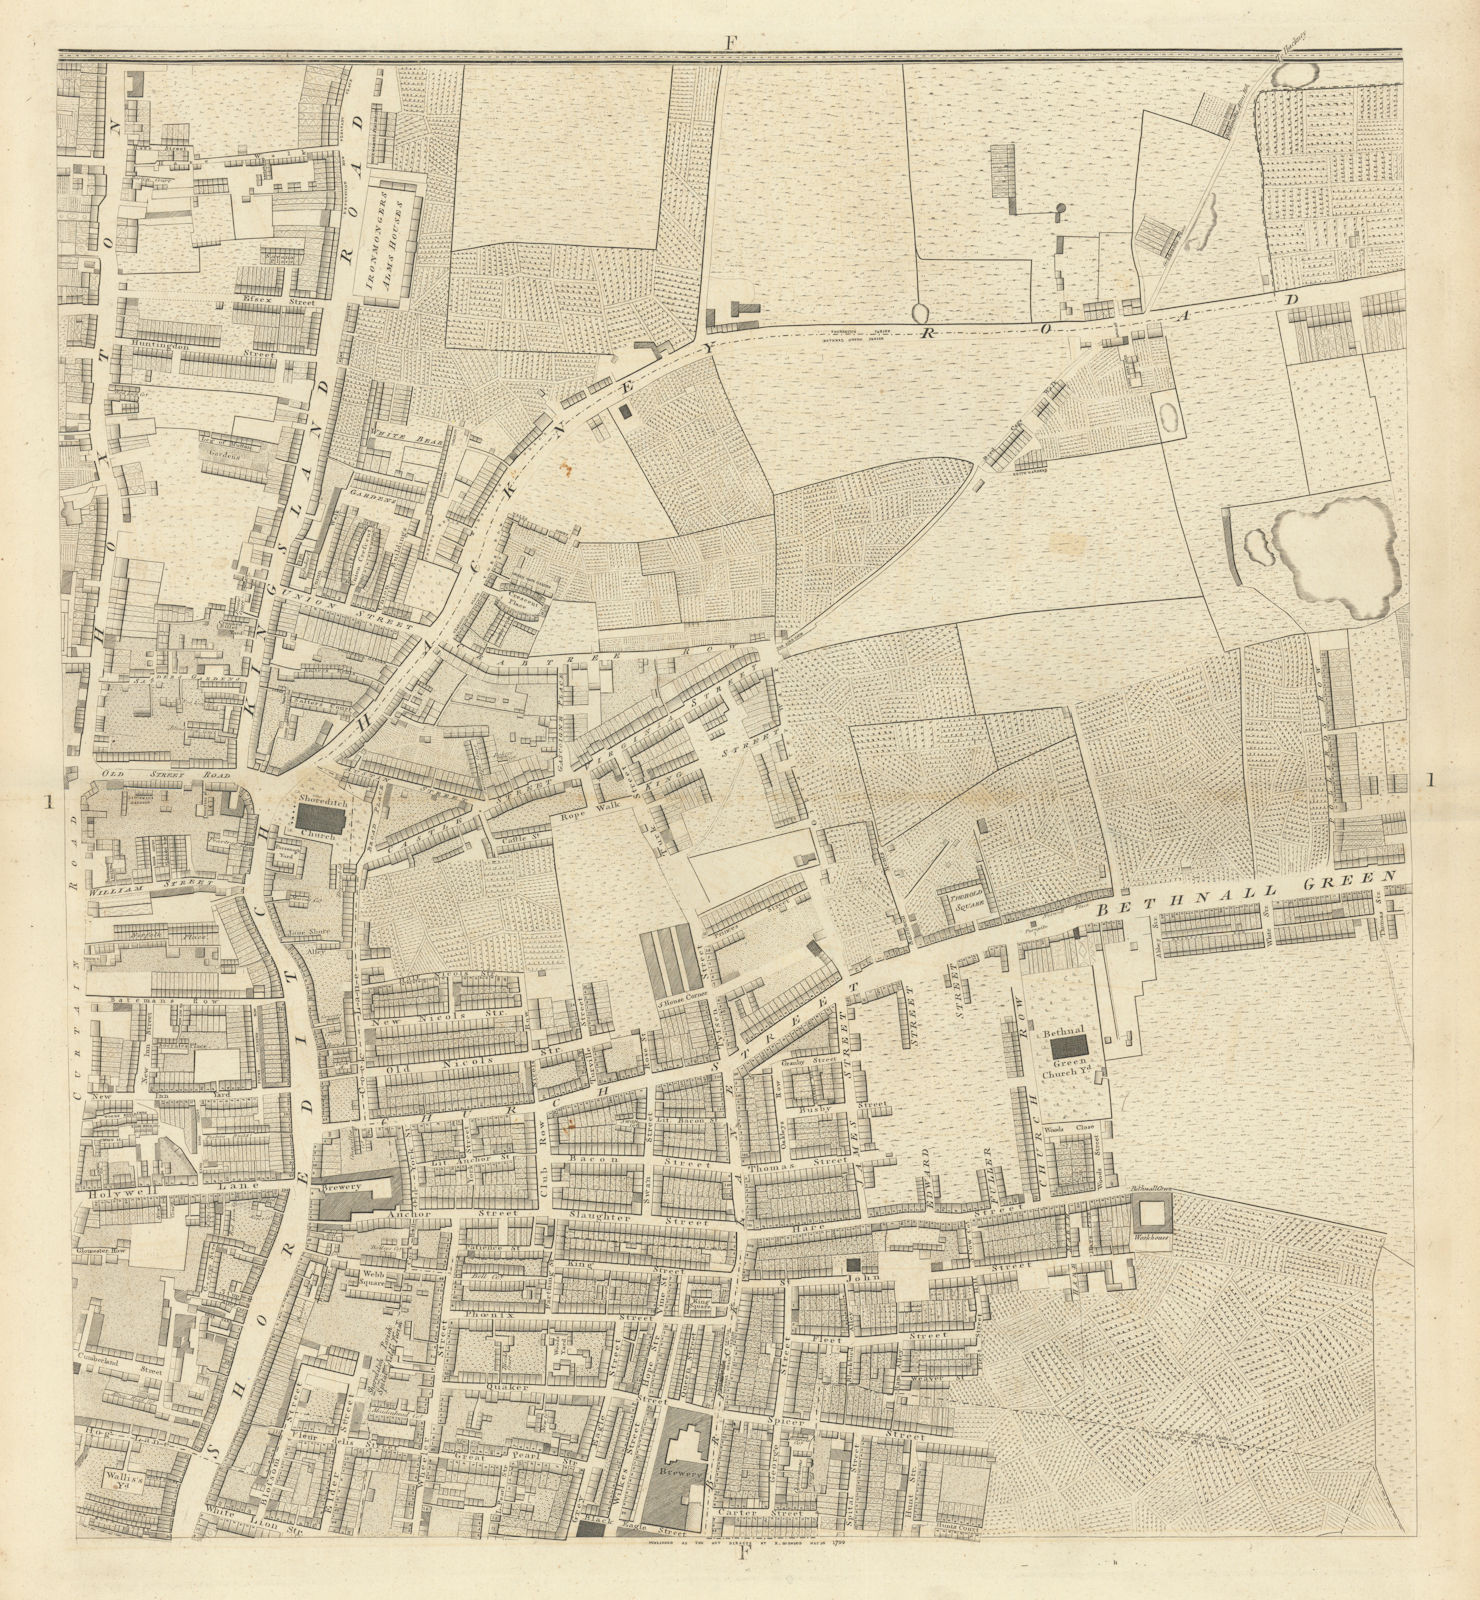 Horwood London F1 Shoreditch High Street Kingsland Rd Bethnal Green Rd 1799 map